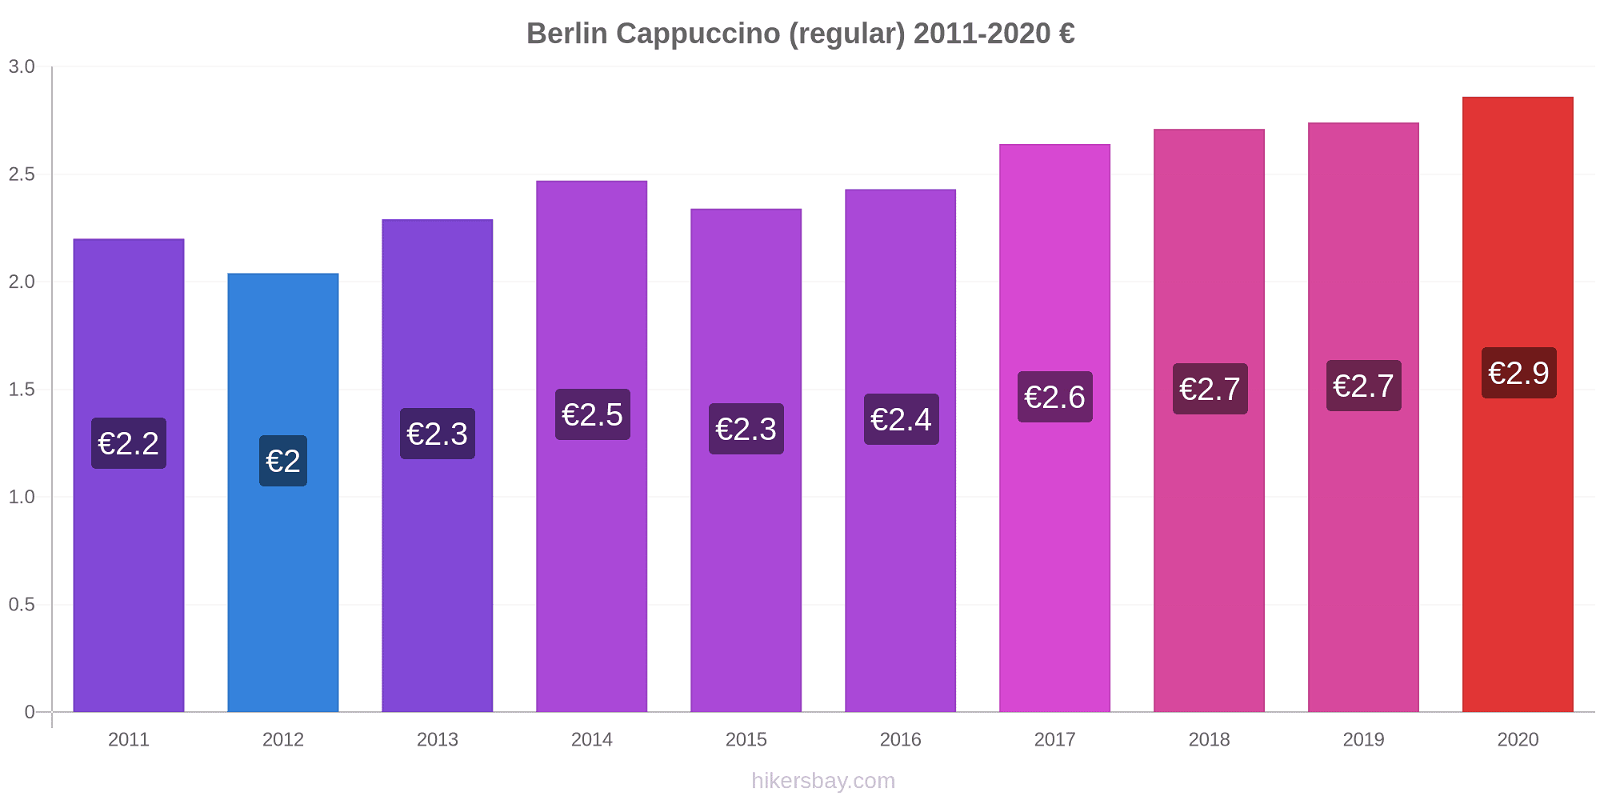 Berlin price changes Cappuccino (regular) hikersbay.com